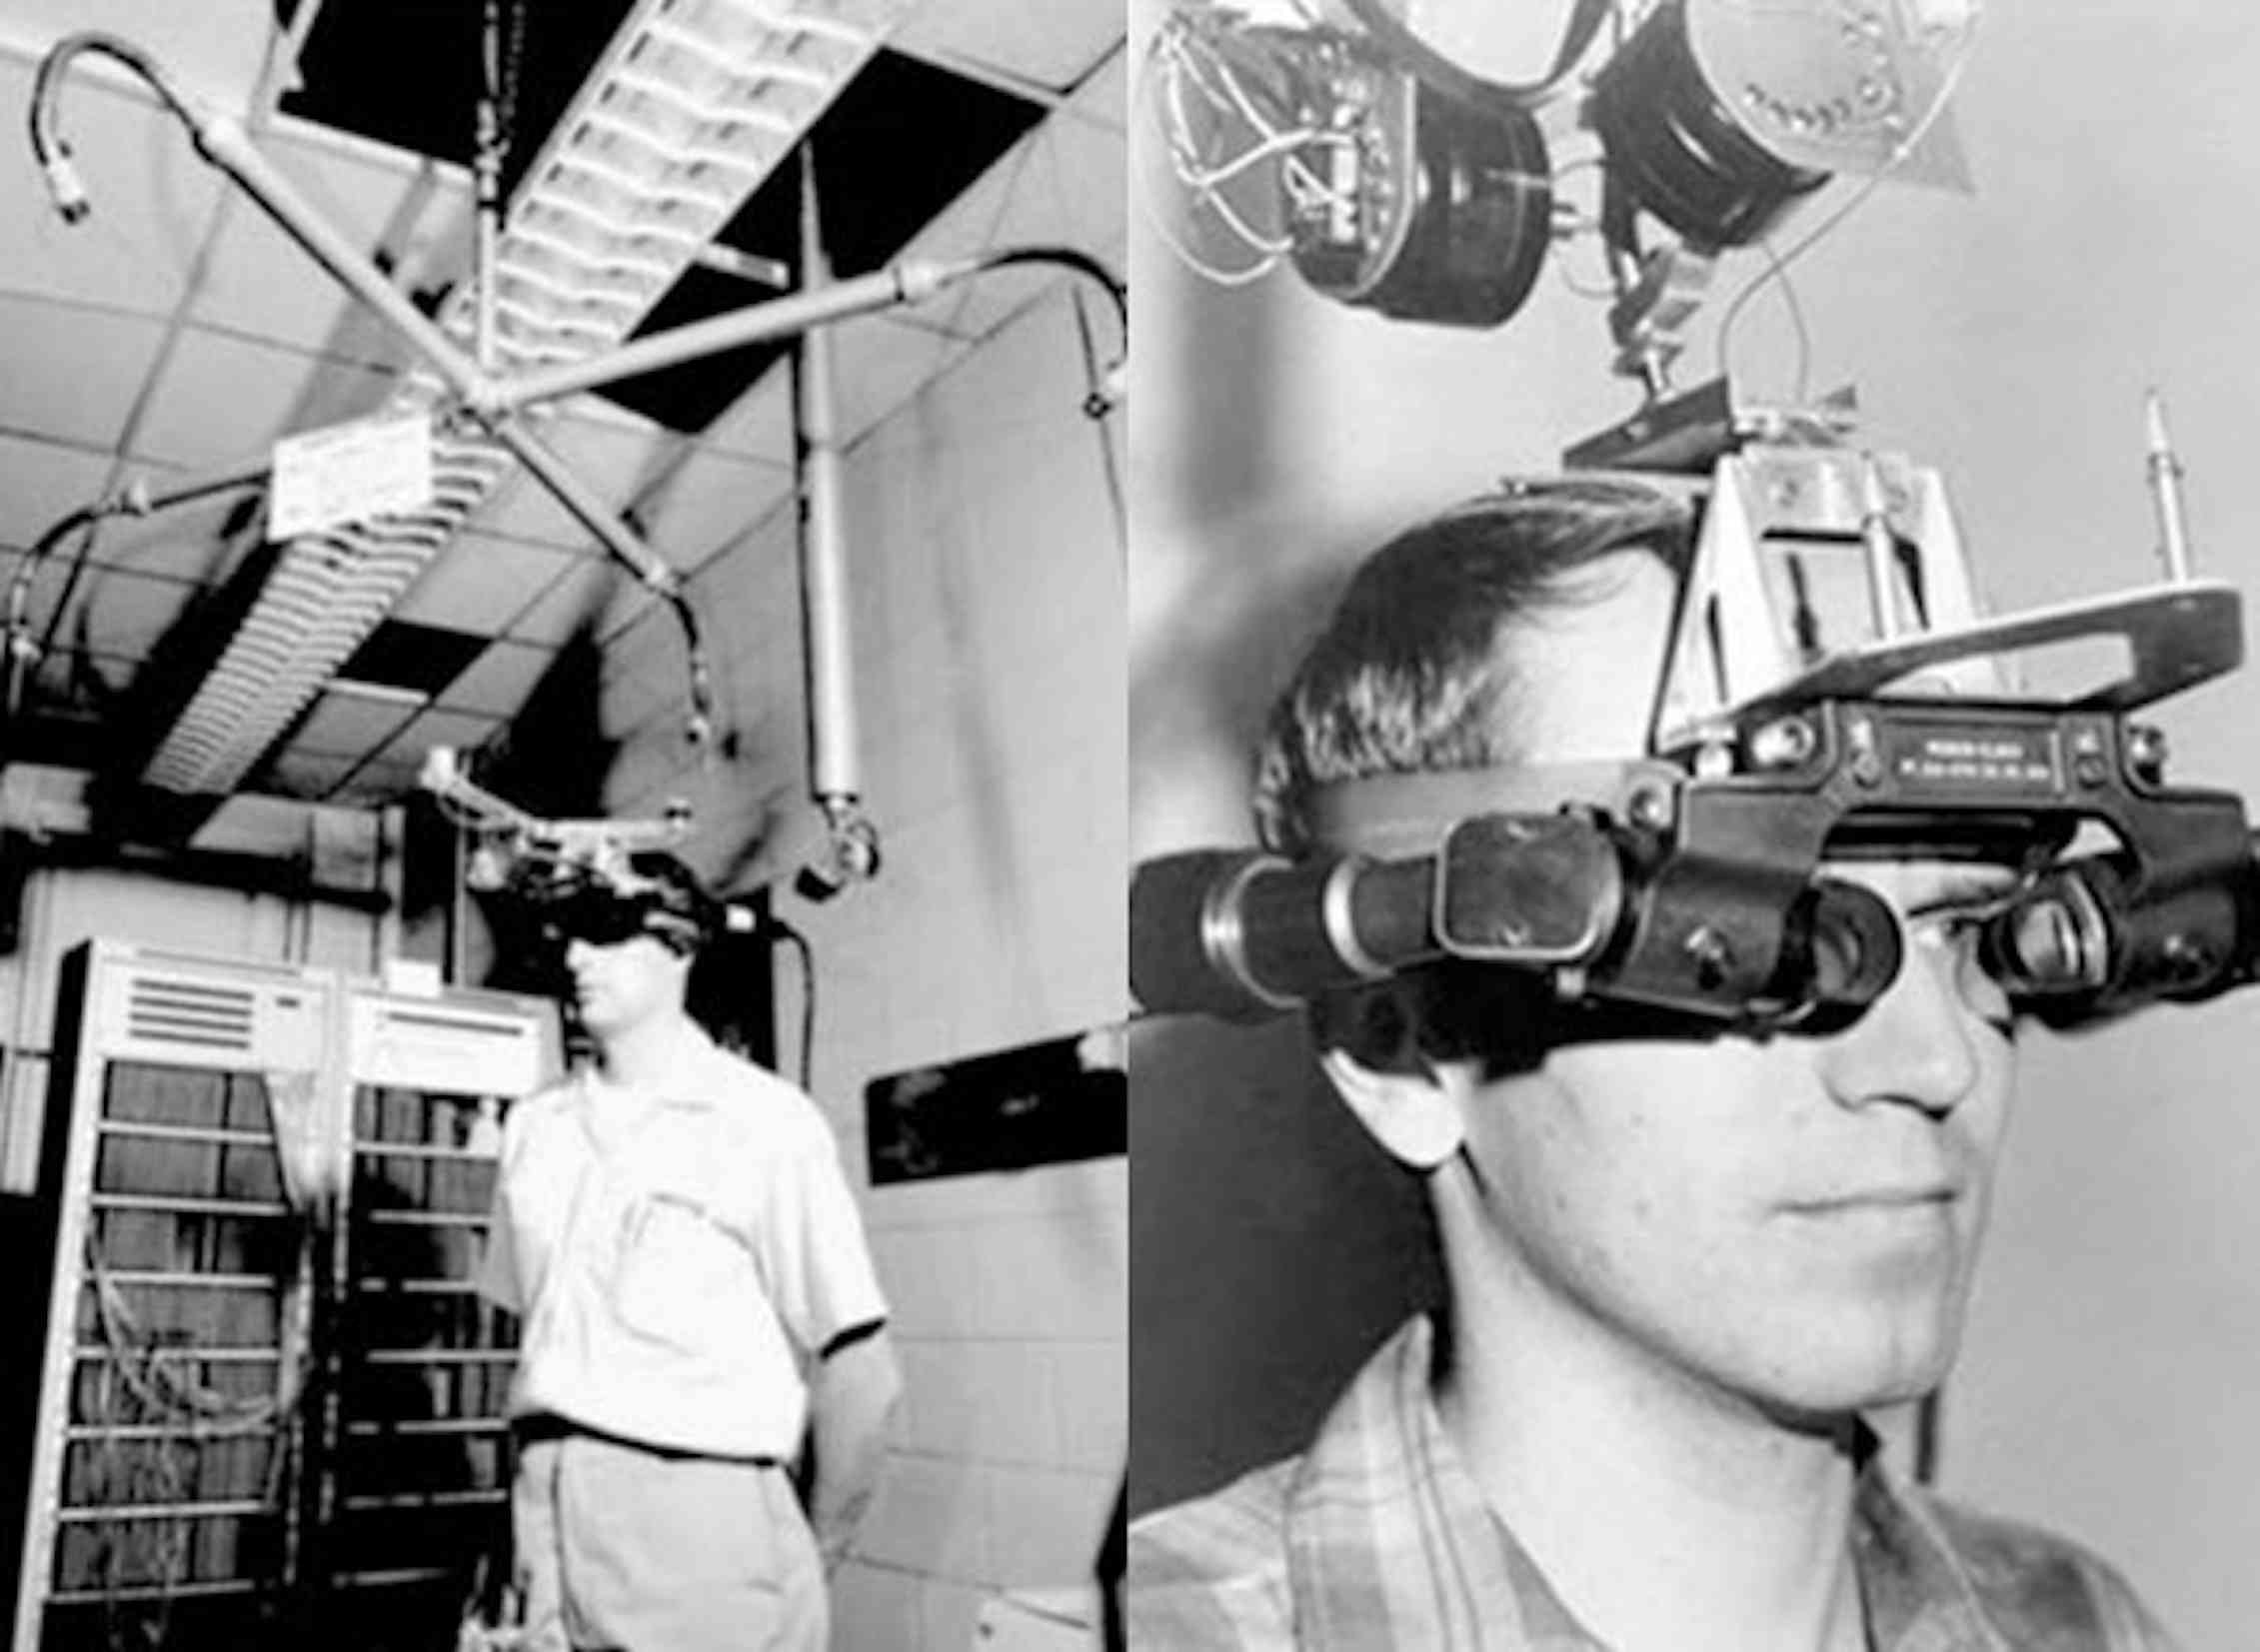 Прототип реальности. Айвен Сазерленд VR ar шлем. 1968 Год — «Sword of Damocles»Айвен Сазерленд VR ar шлем. Sword of Damocles шлем виртуальной реальности. Дамоклов меч Айвена Сазерленда.